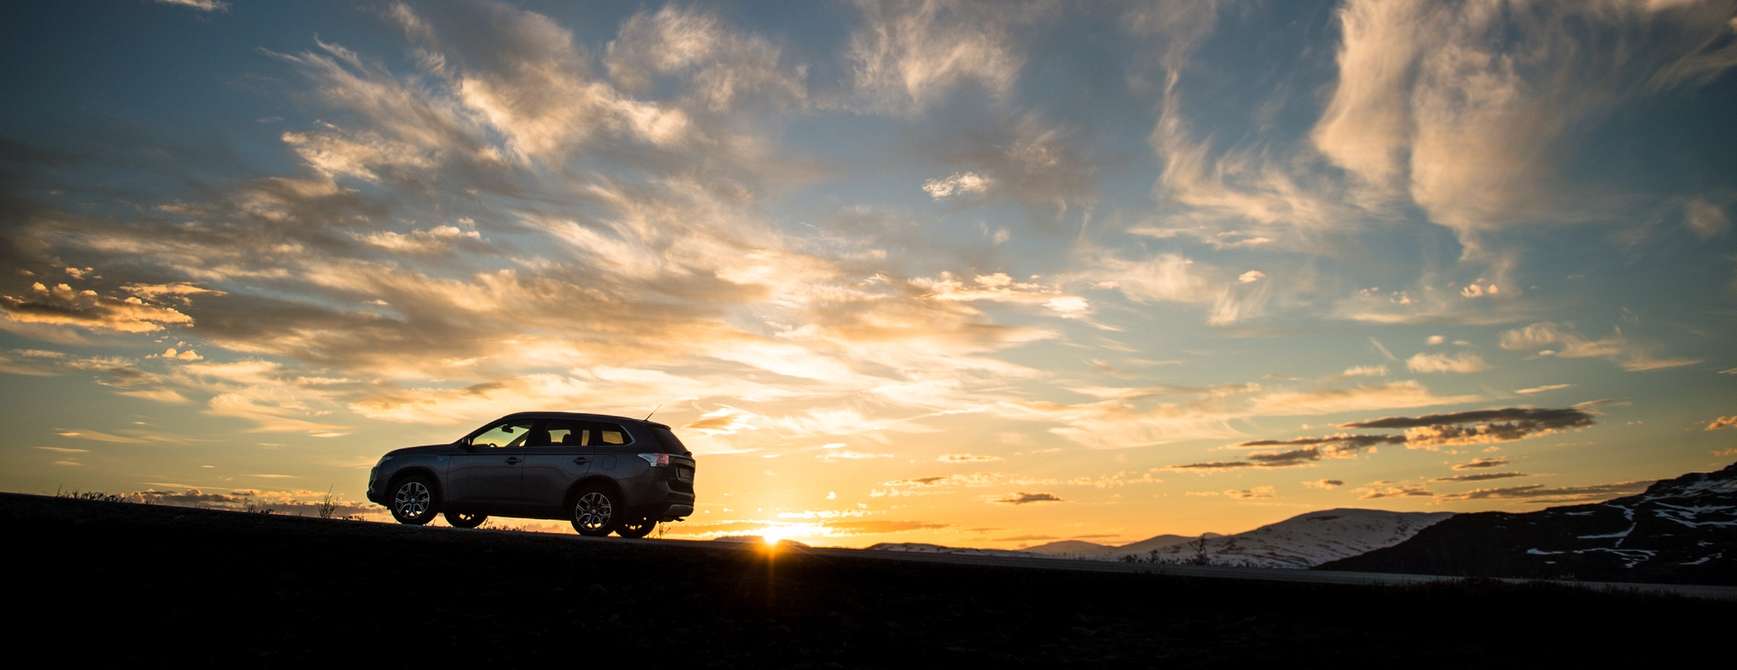 Auto auf einem Berg im Sonnenuntergang